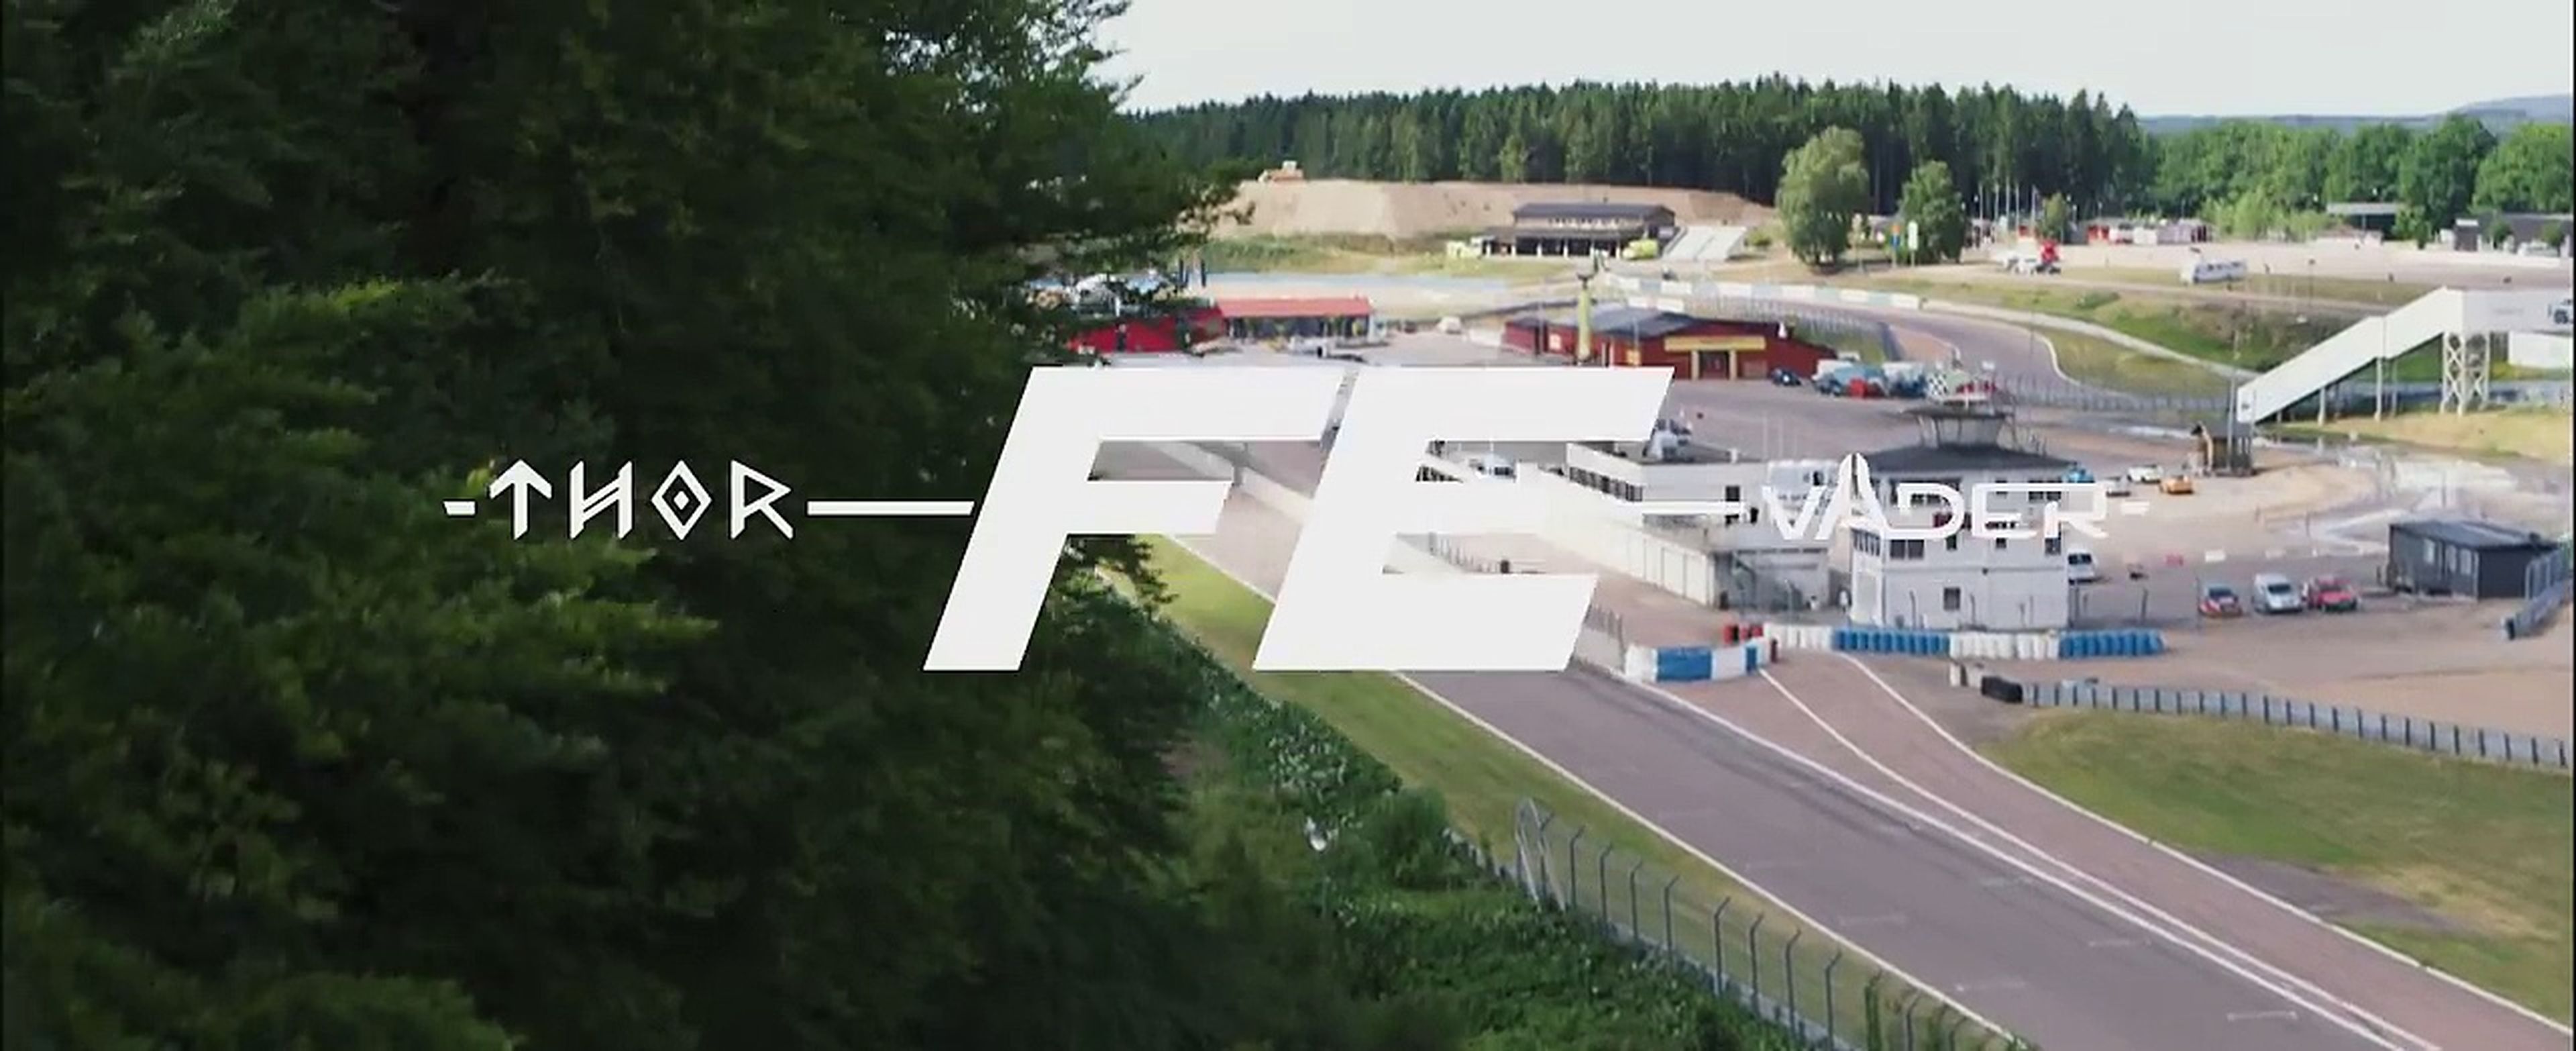 VÍDEO: Koenigsegg Agera Thor y Väder, frente a frente [TG]